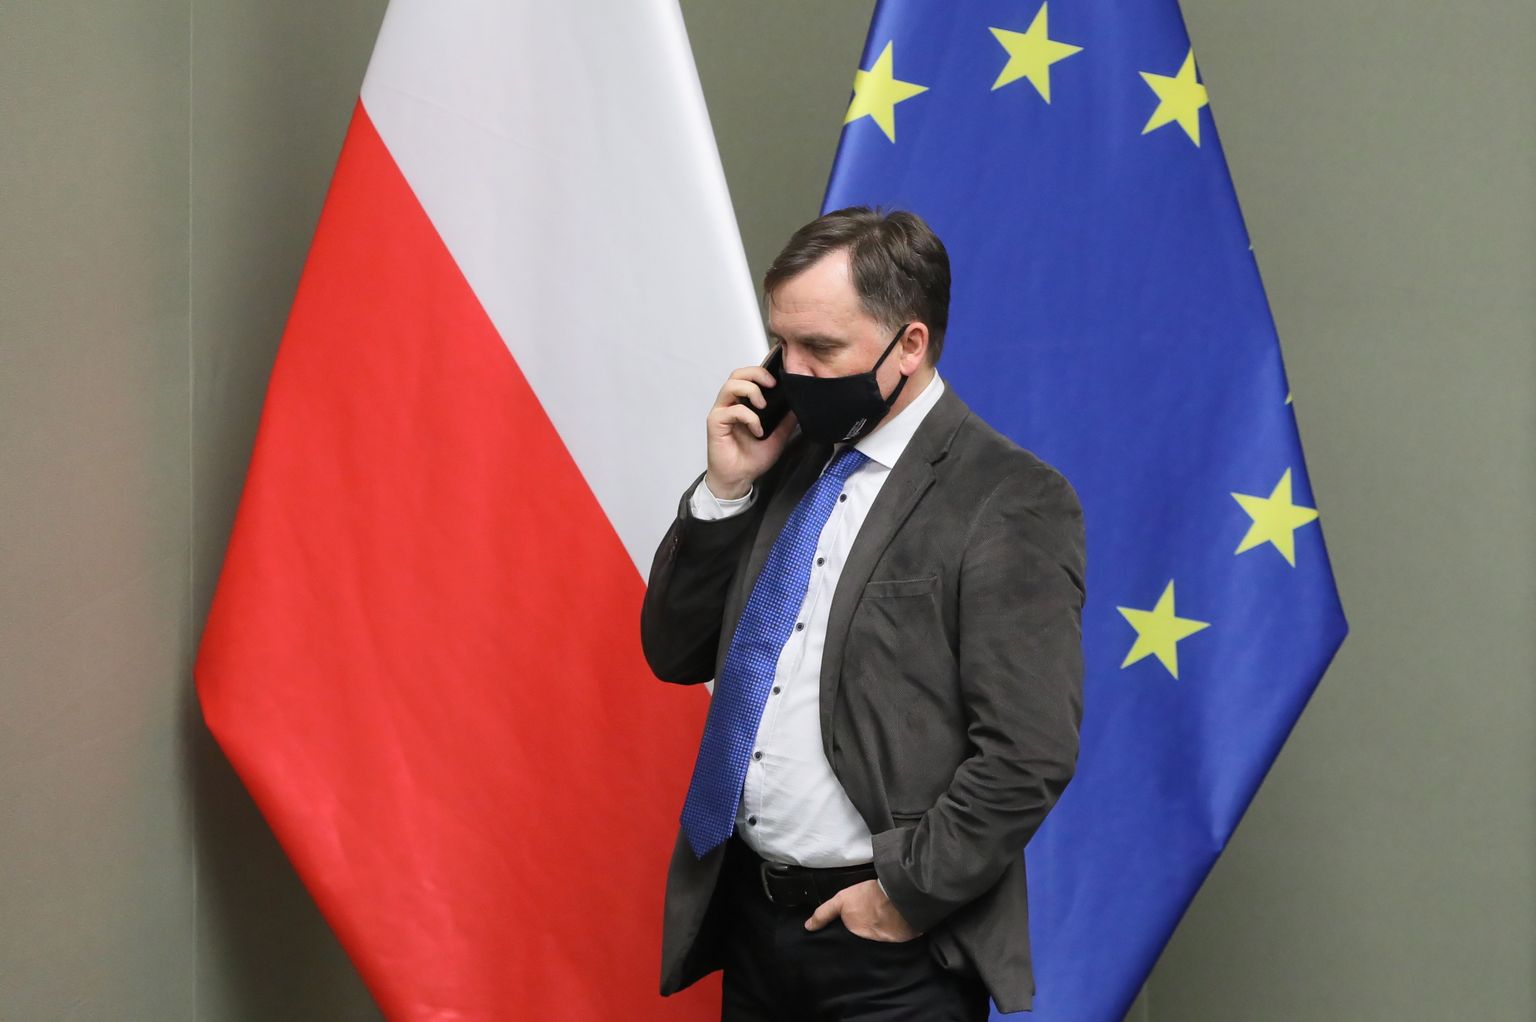 Poola justiitsminister Zbigniew Ziobro 9. novembril 2021. aastal toimunud parlamendiistungi ajal. Taustal  Poola ja Euroopa Liidu lippud.